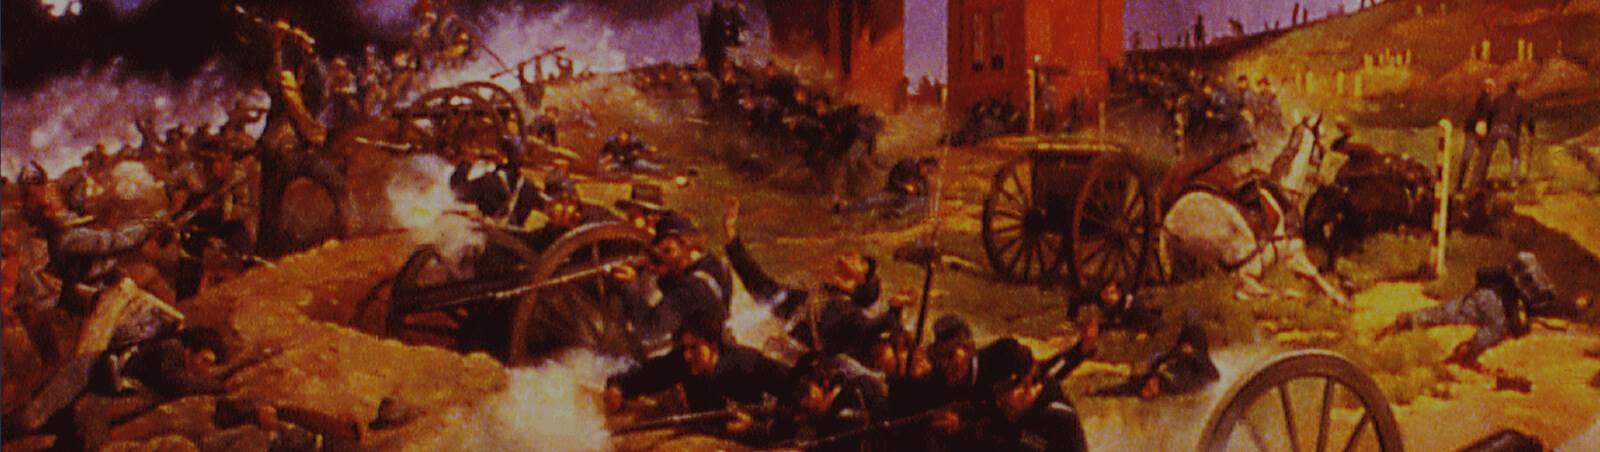 Civil War battle depiction